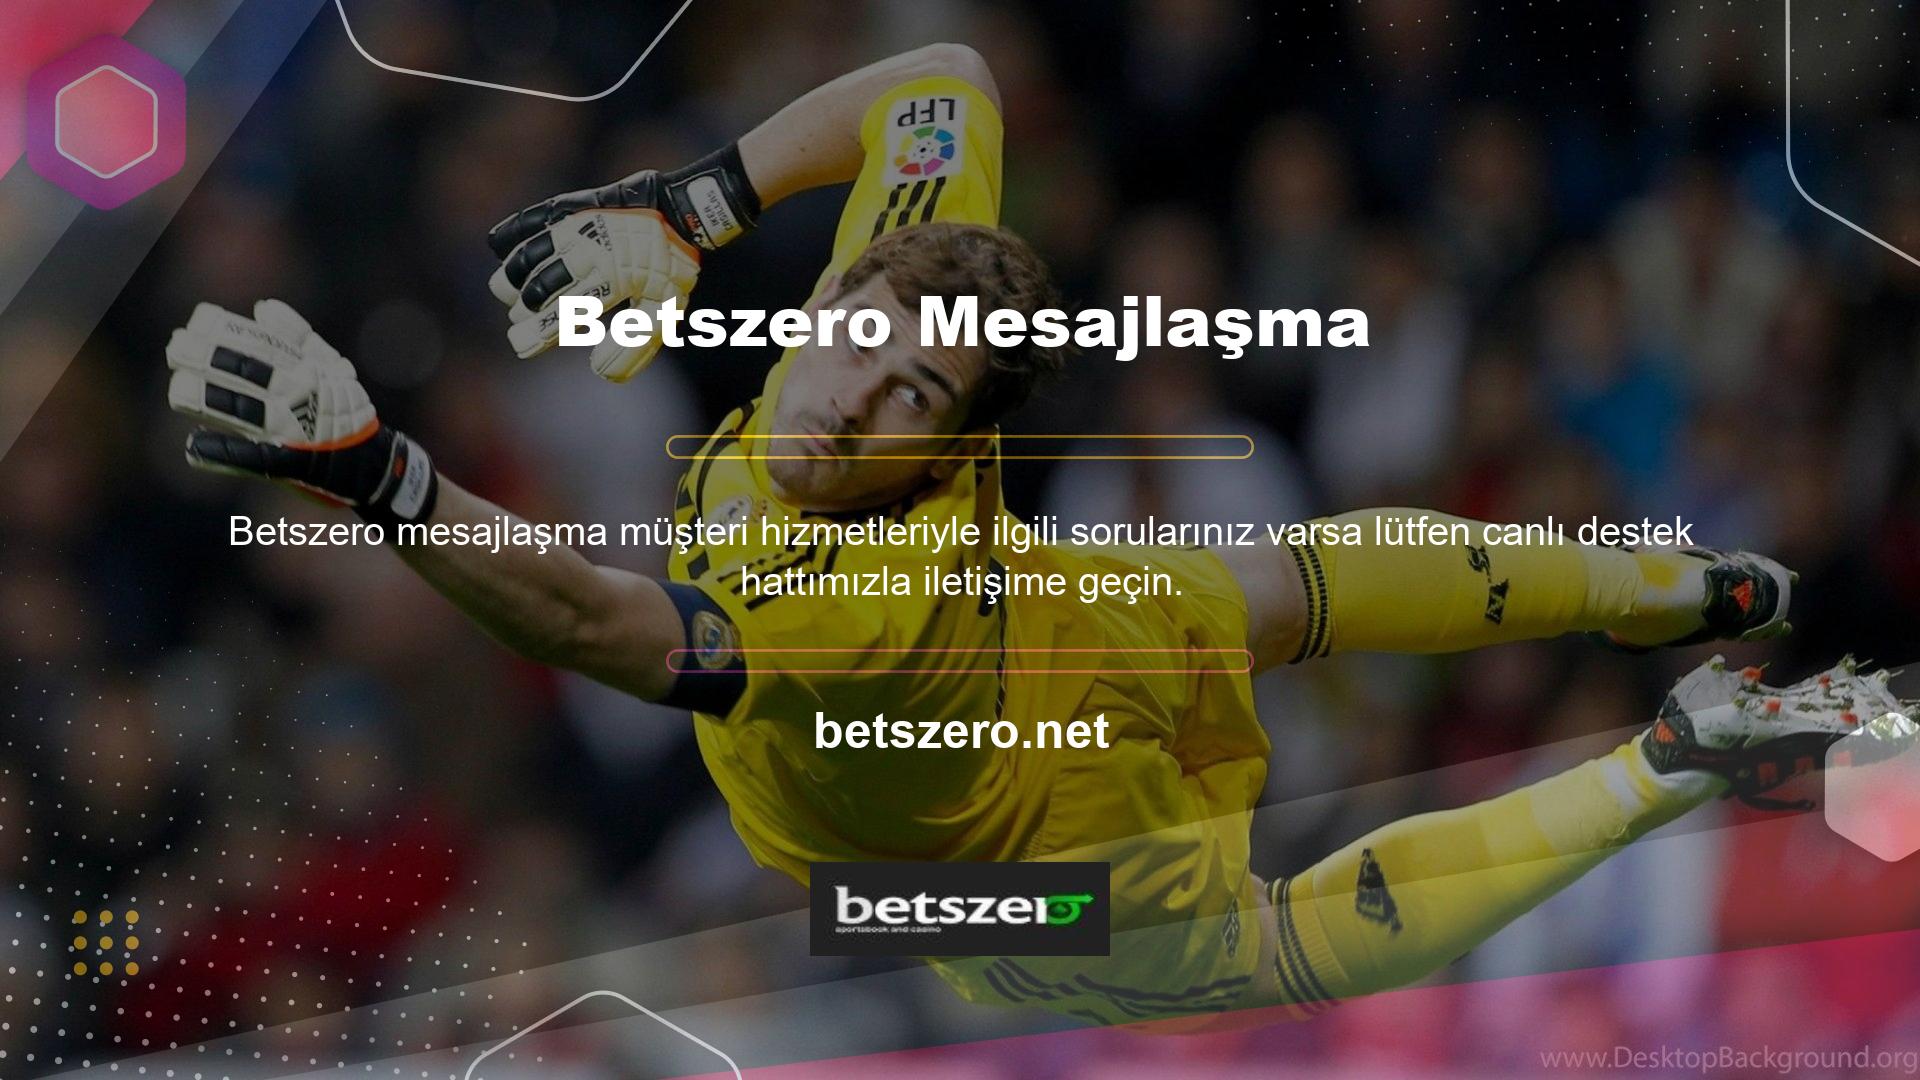 Betszero Spor müşteri hizmetlerine mesajlaşma servisi üzerinden ulaşılabilmektedir